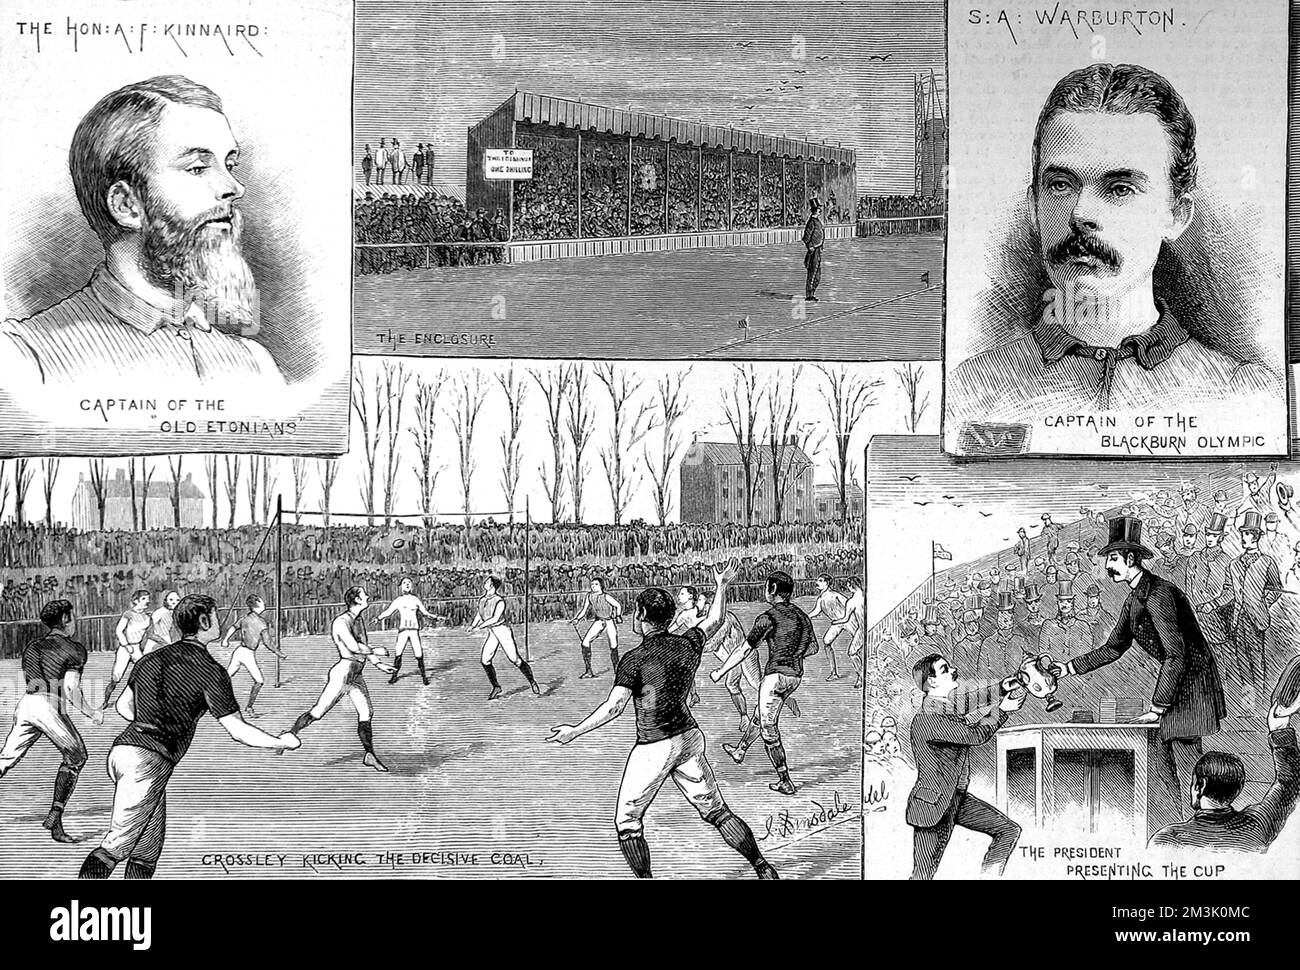 Un certo numero di scene dal F.A. Coppa finale del 1883, giocata tra Blackburn Olympic e gli Old Etonians a Kennington Oval, Londra. La partita è stata vinta da Blackburn 2-1. Le immagini mostrano: (In alto a sinistra) A.F. Kinnaird, Capitano dei vecchi Etoniani; (in alto al centro) il Main Stand; (in alto a destra) S.A. Warburton, Capitano di Blackburn Olympic; (in basso a sinistra) Crossley di Blackburn che segna l'obiettivo decisivo; (in basso a destra) il F.A. Il Presidente presenta la Coppa a Warburton. 1883 Foto Stock